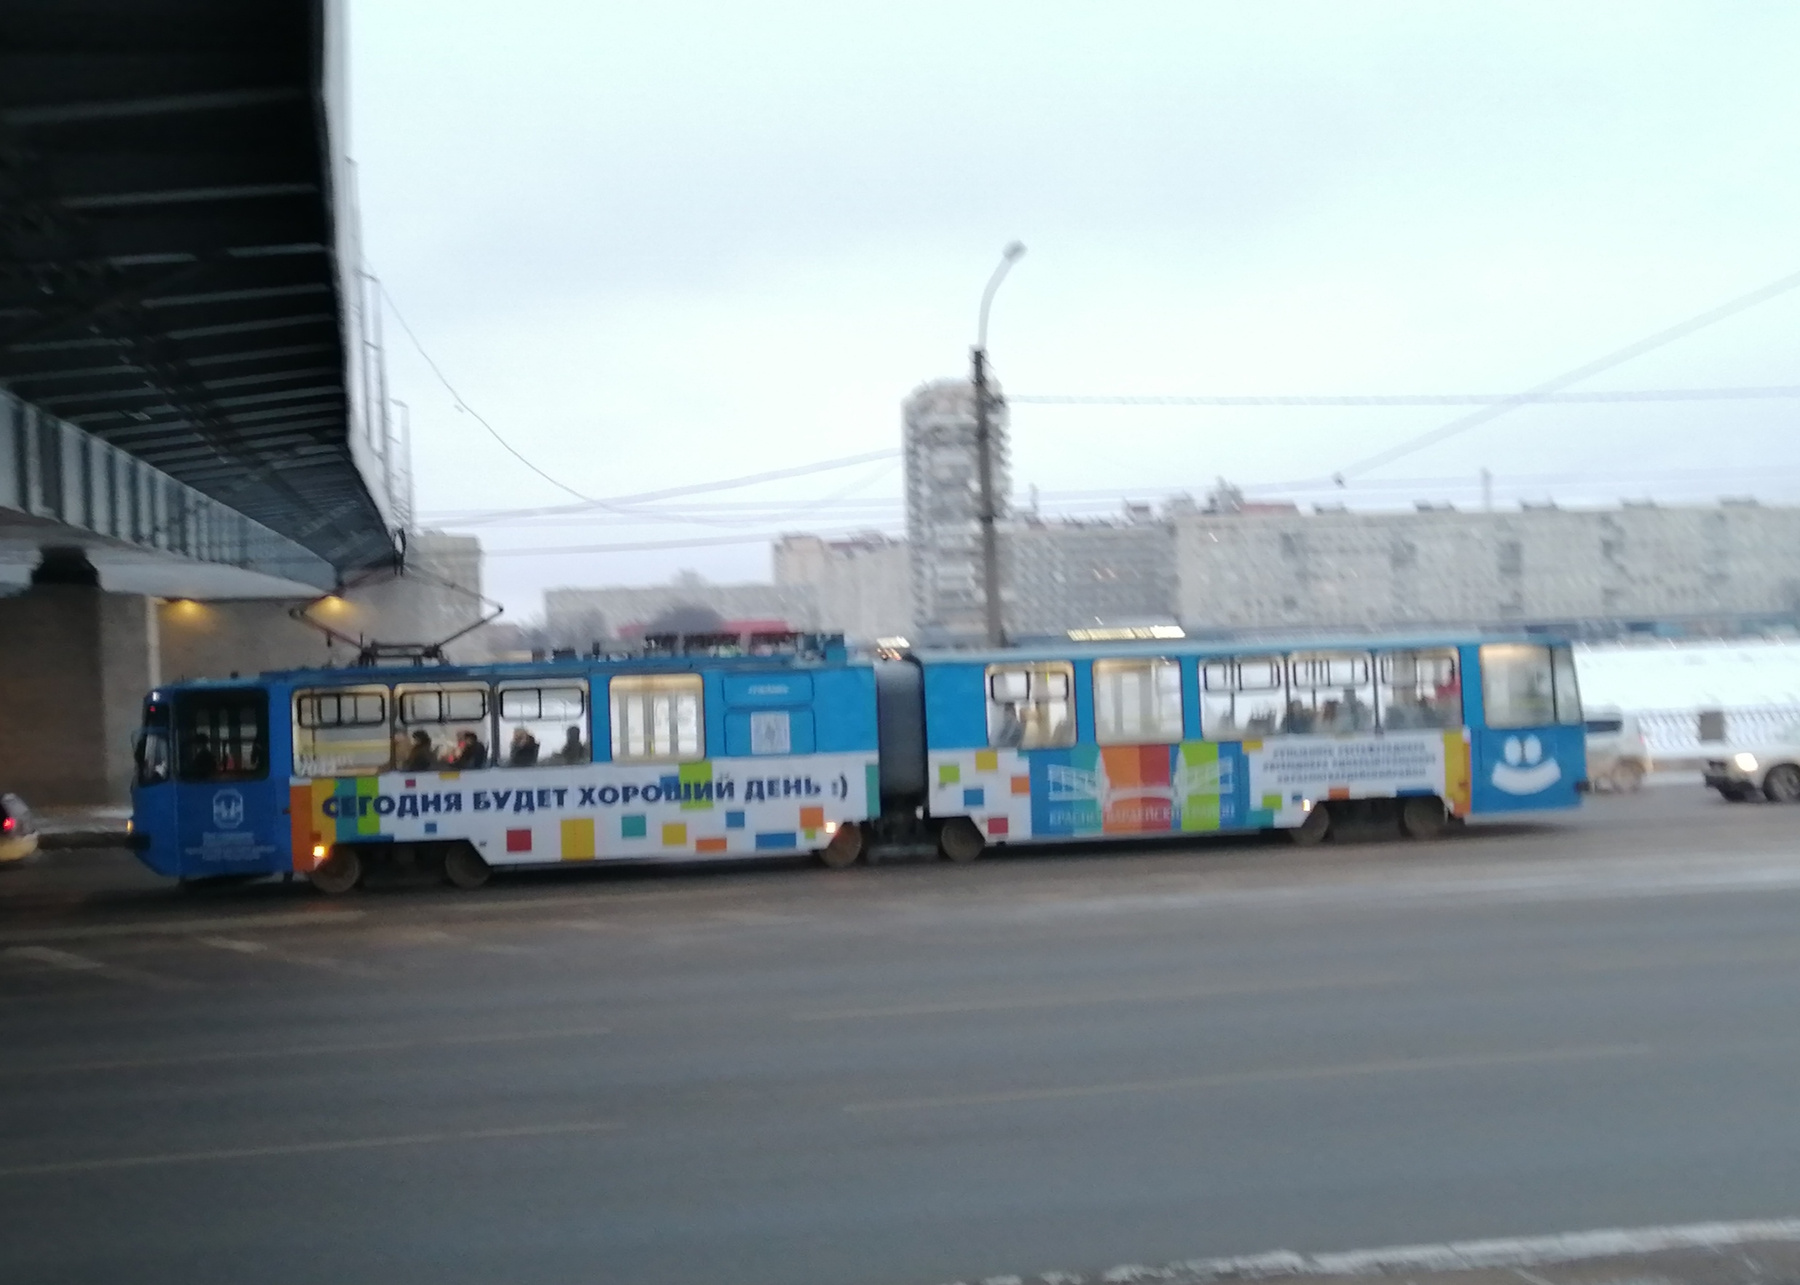 Трамвай в Санкт-Петербурге 2021 Санкт-Петербург зима трамвай транспорт